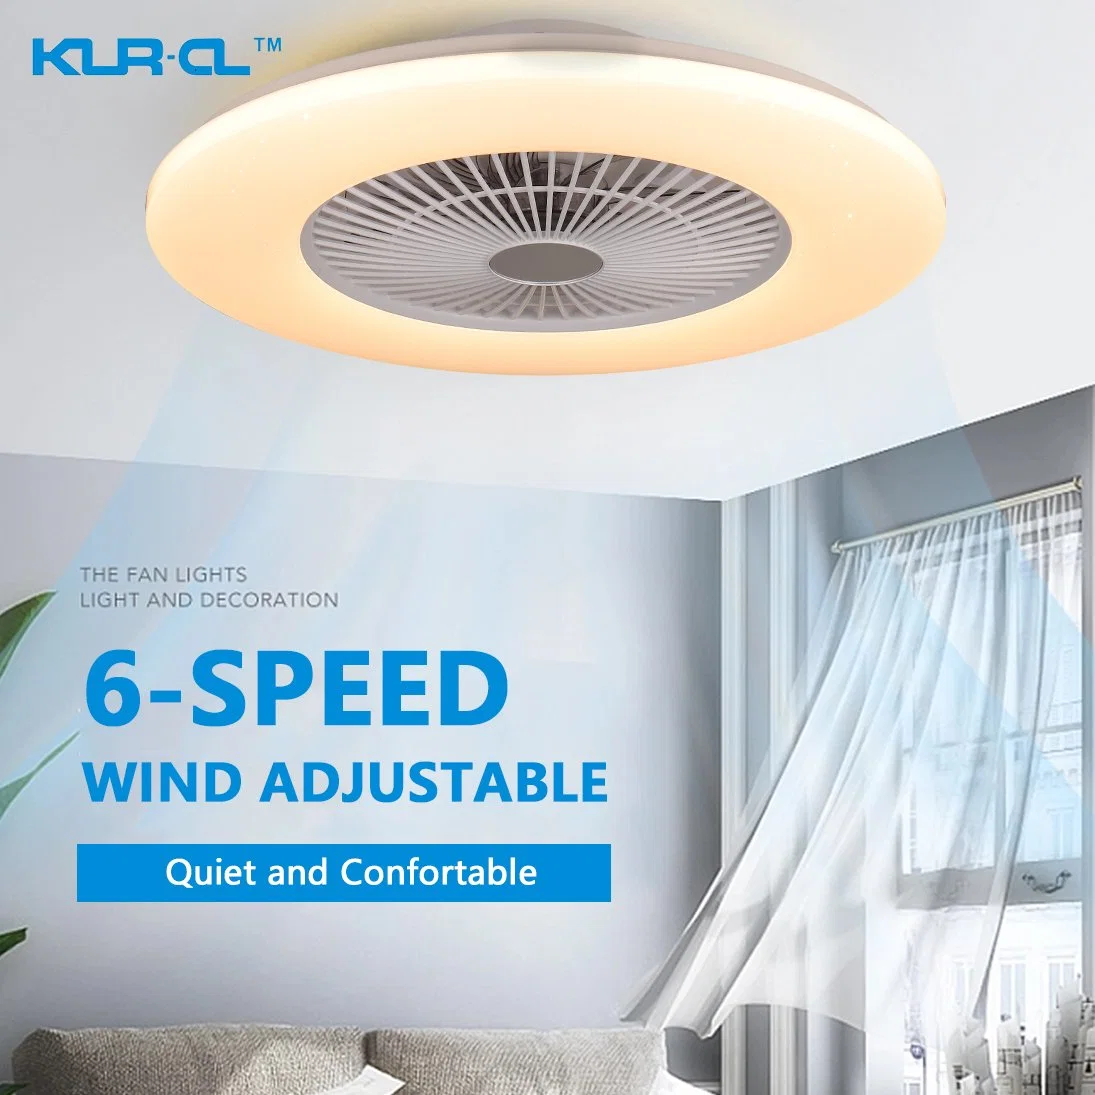 Contrôle de ventilateur de plafond moderne à 6 vitesses avec lumière dimmable via une application Bluetooth